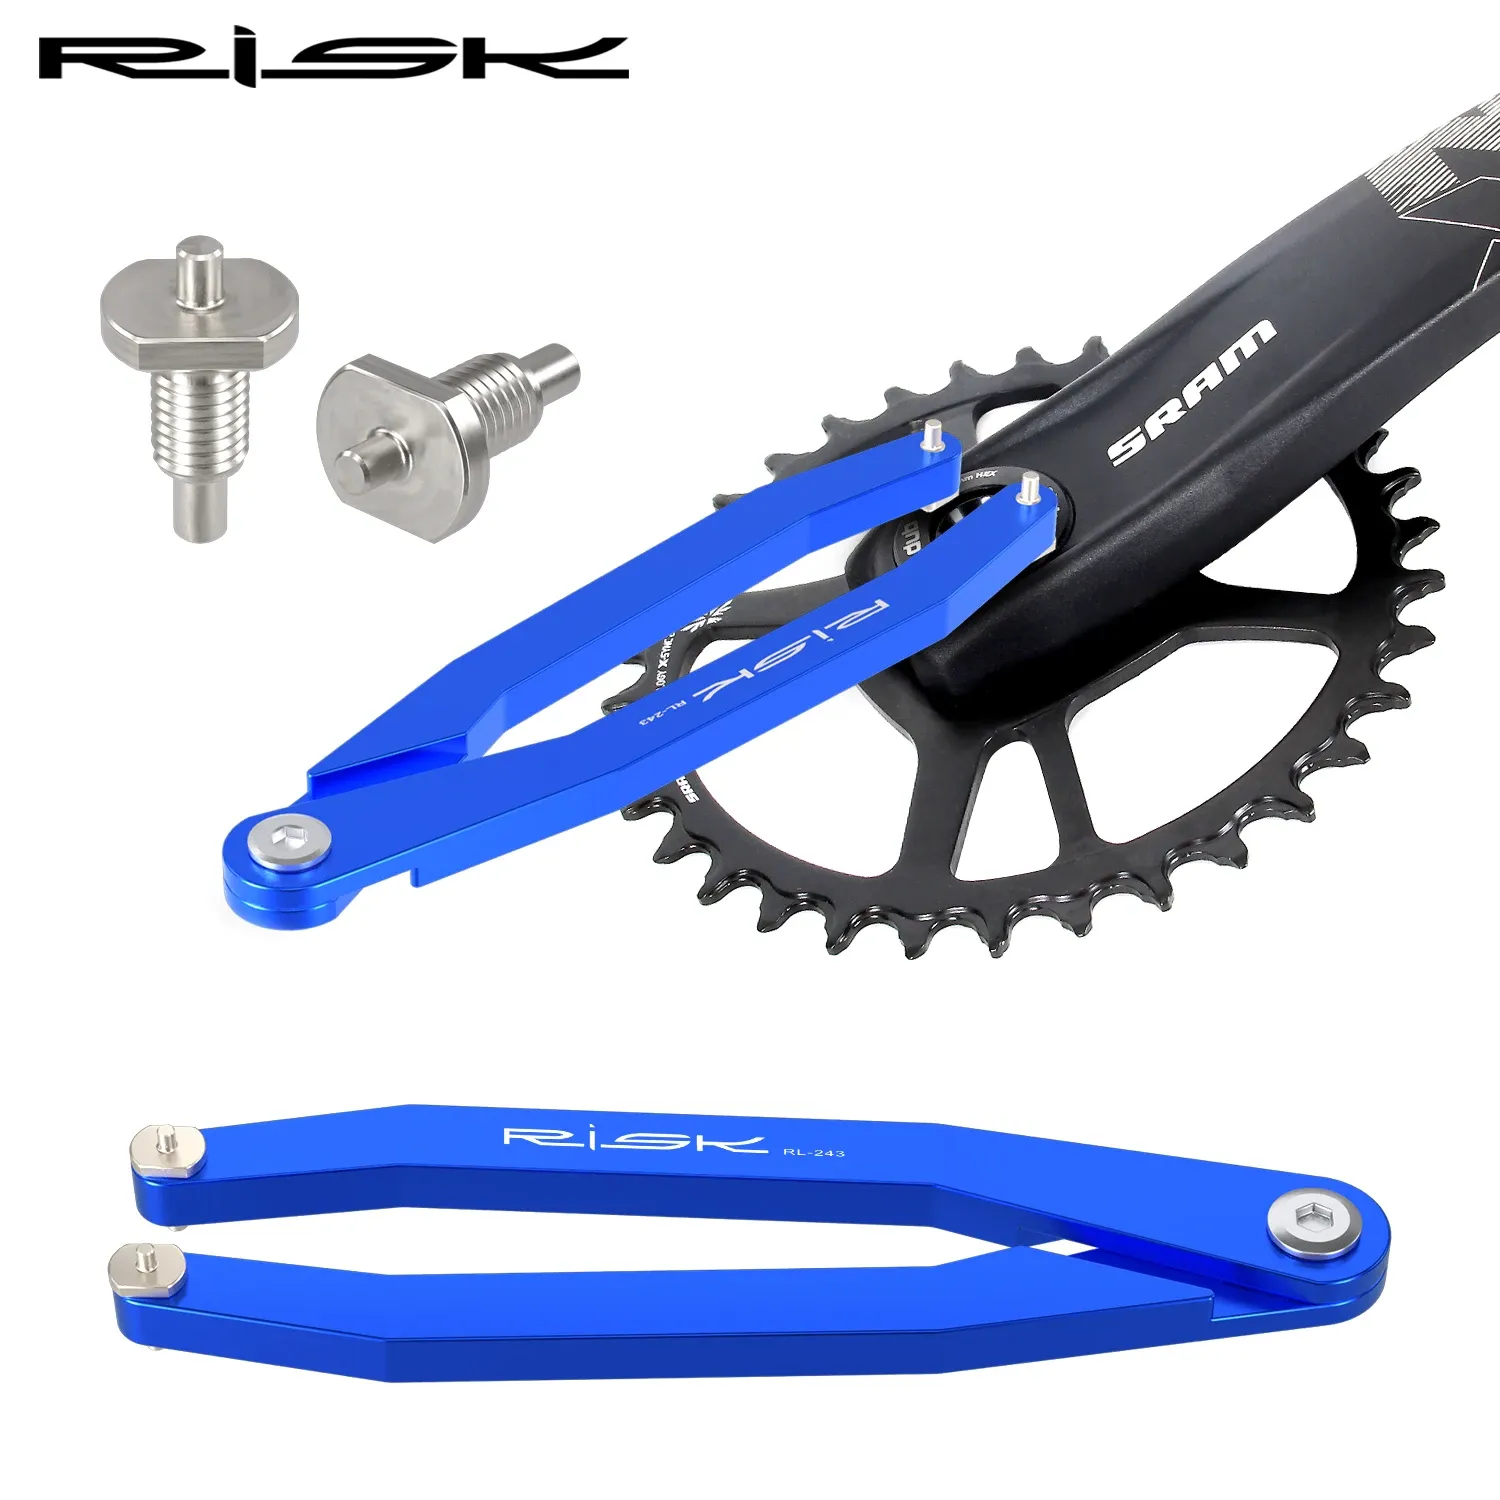 Инструменты риски велосипедные руки крышки штифт Регулируемый инструмент велосипедный хаб нижний кронштейн.